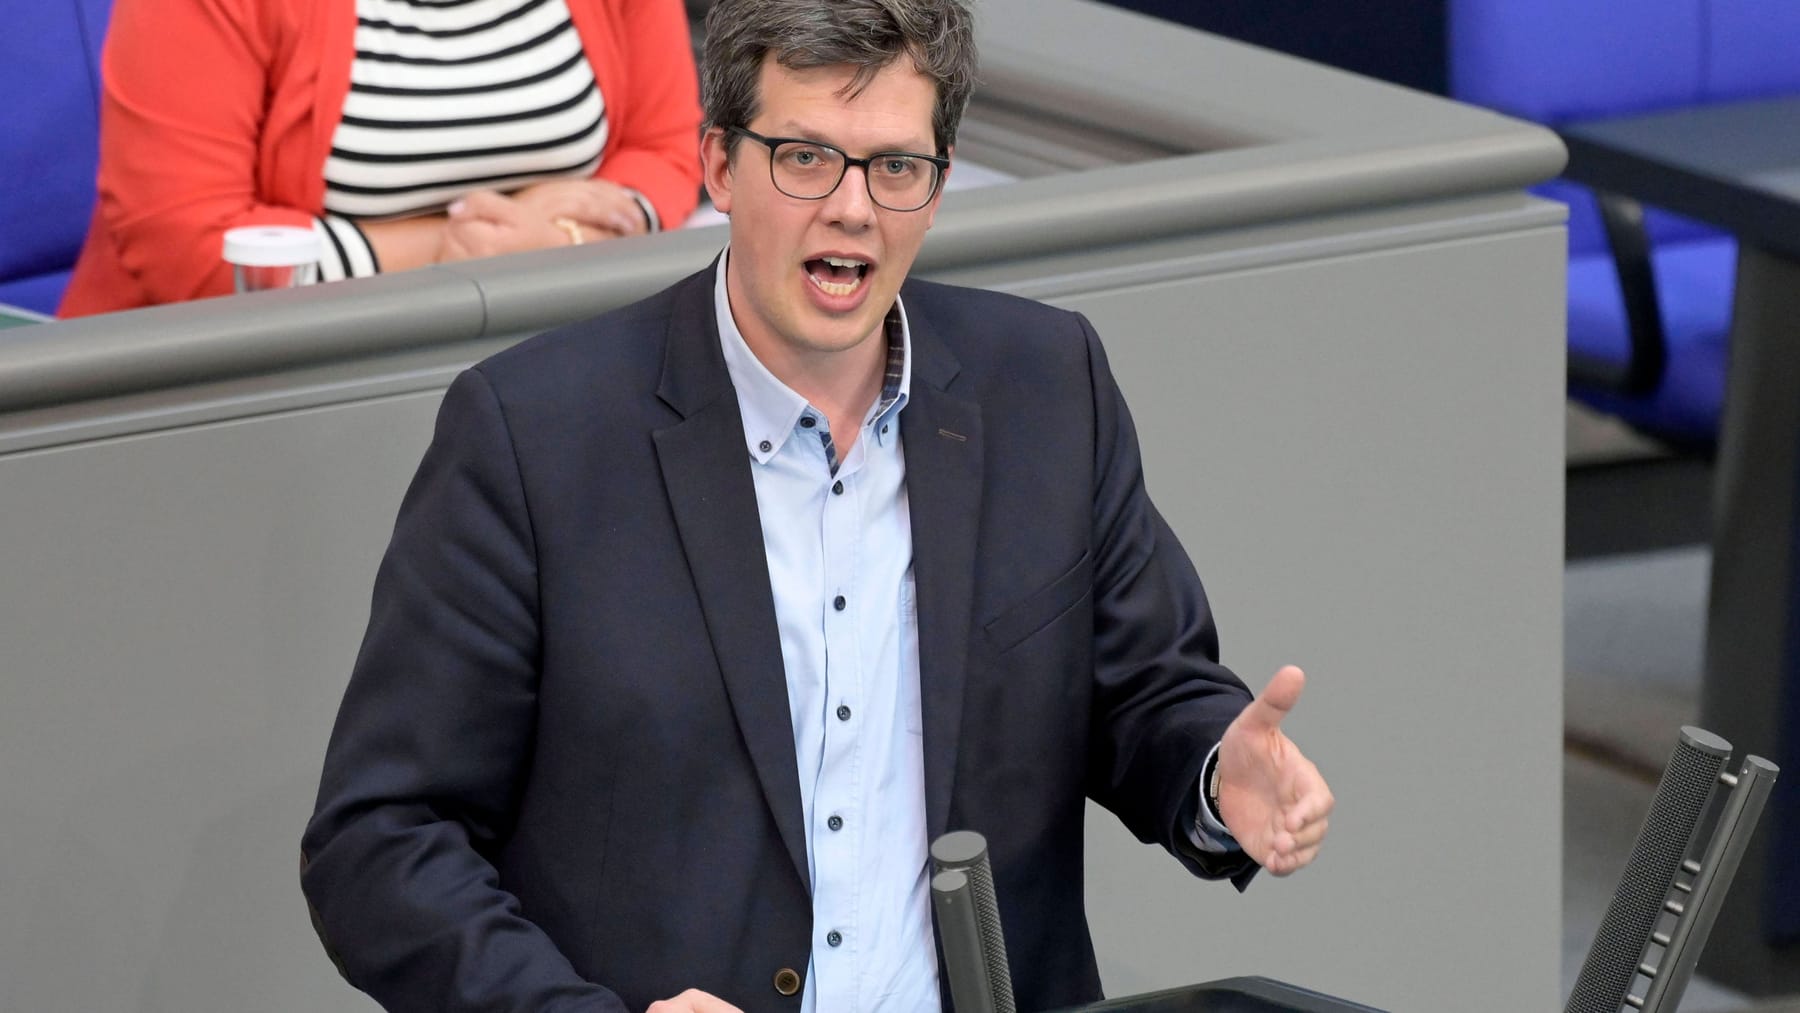 Arbeitszeiten: FDP will Achtstundentage abschaffen